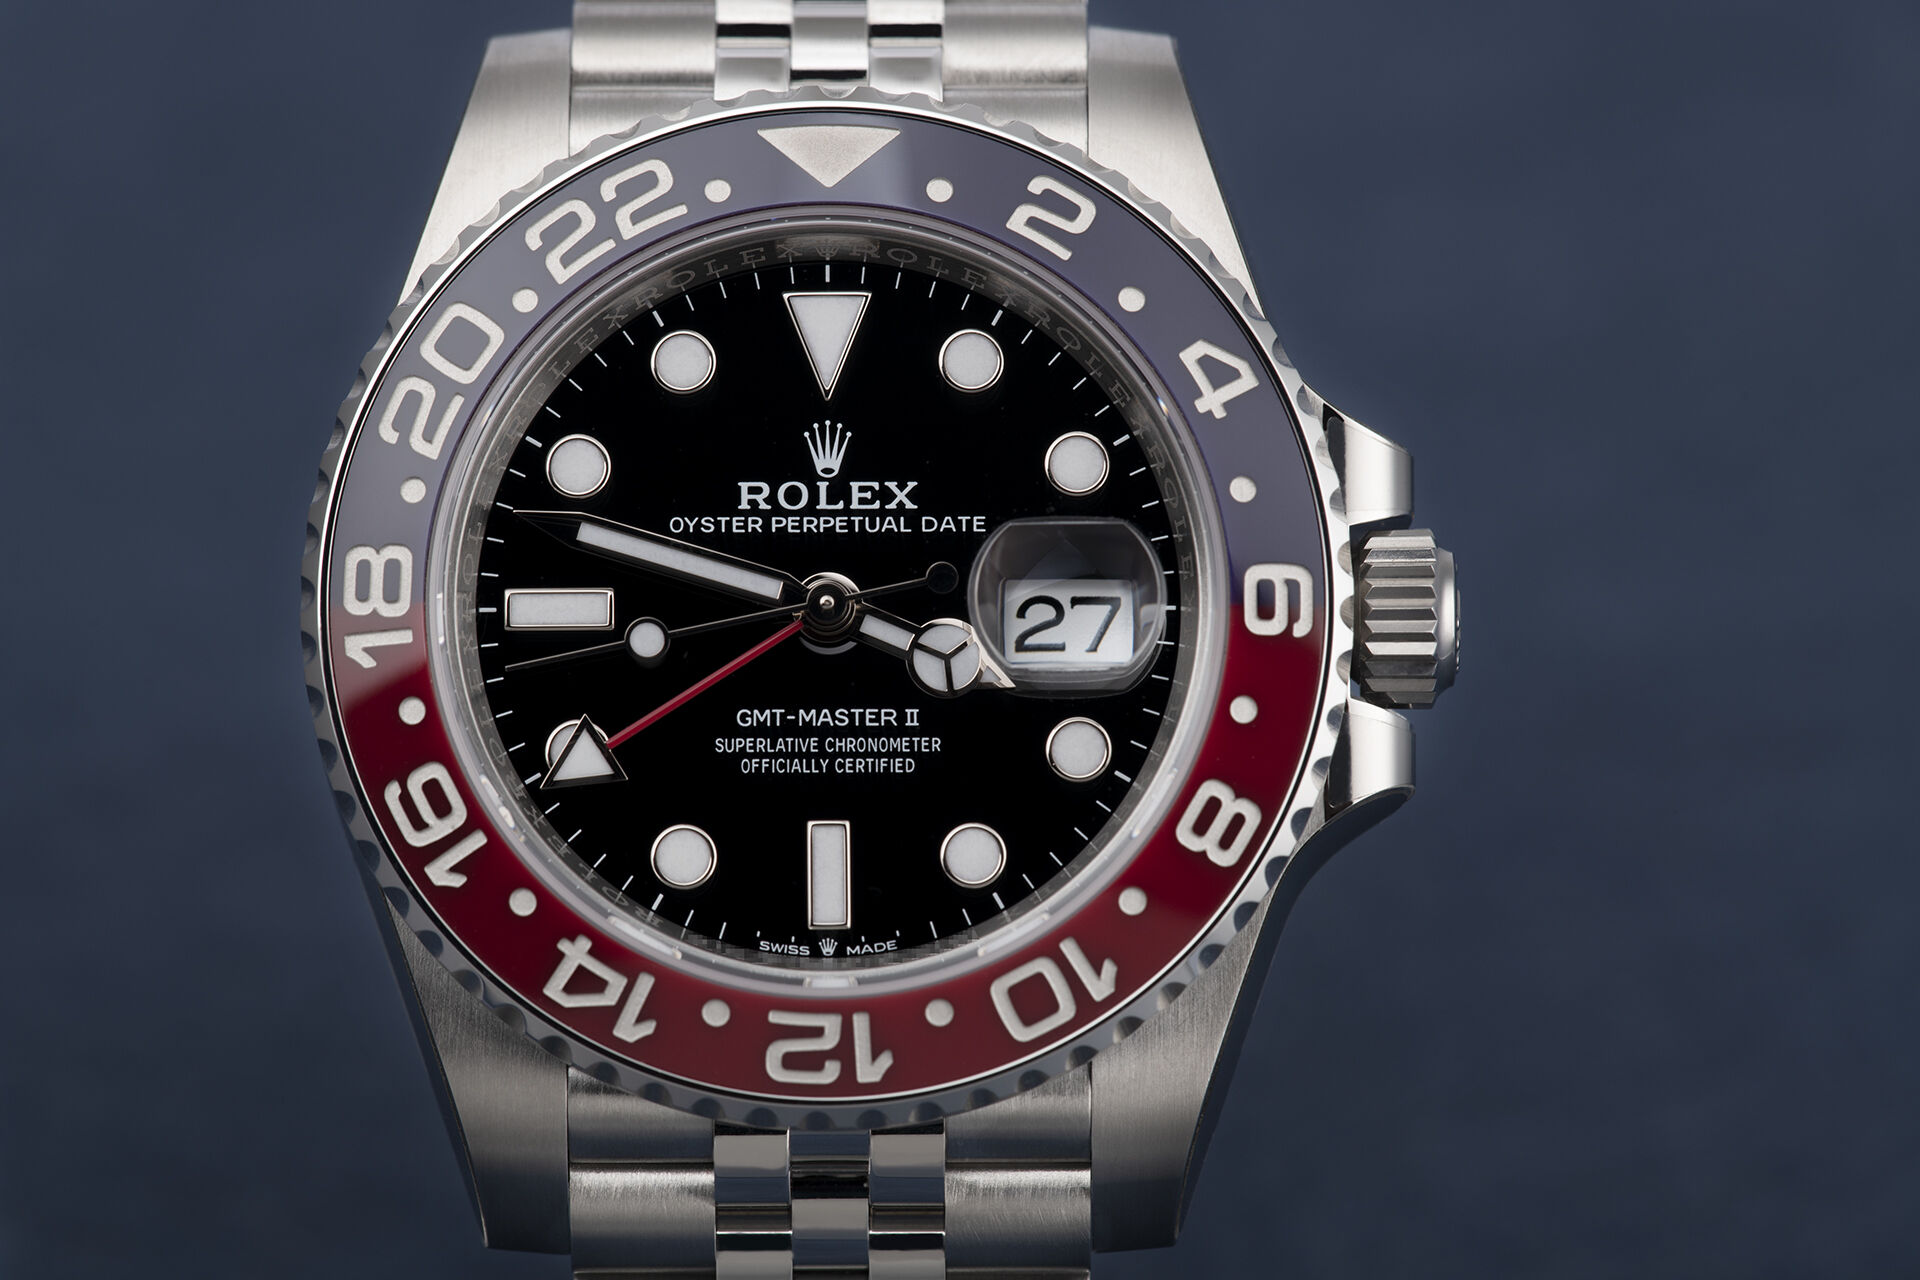 ref 126710BLRO | Factory Stickers | Rolex GMT-Master II